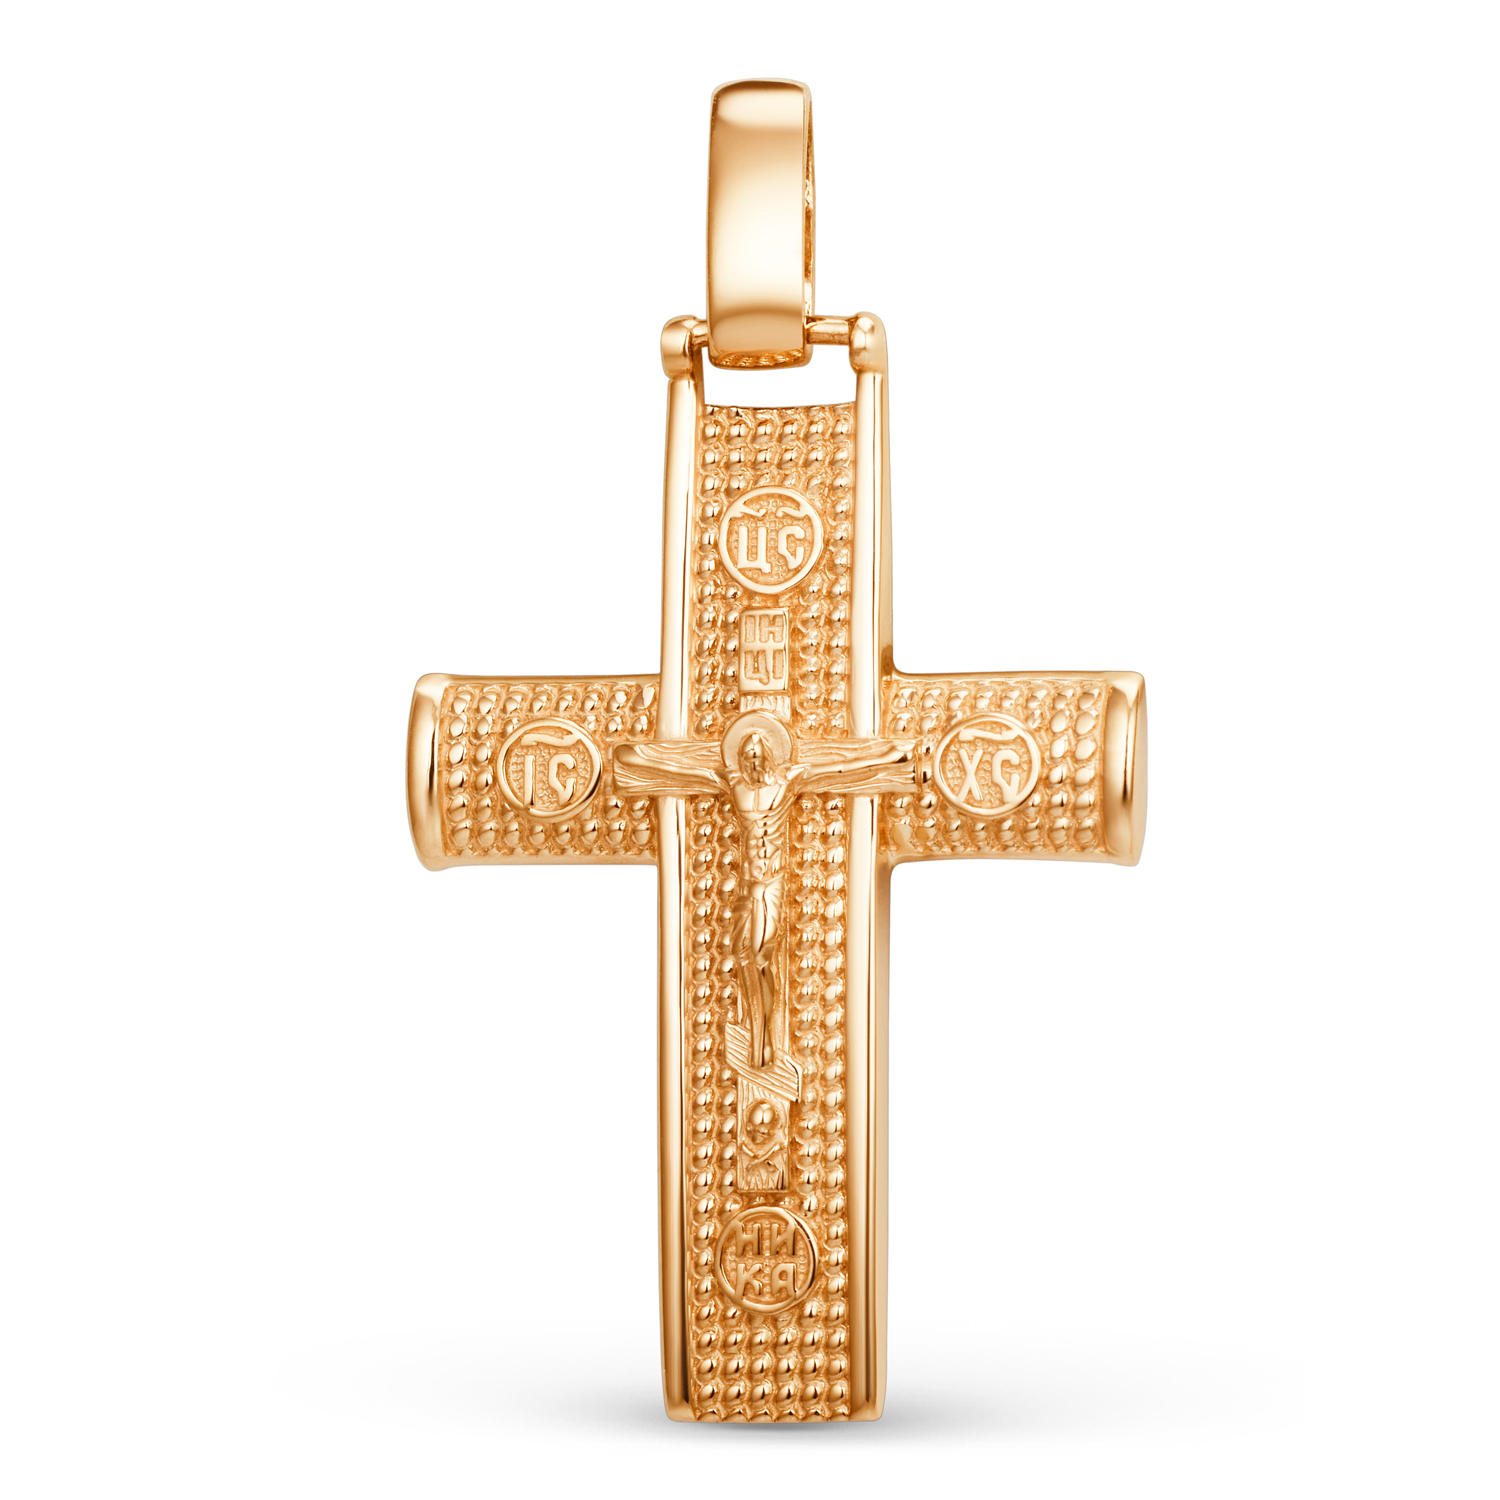 Крест из золота